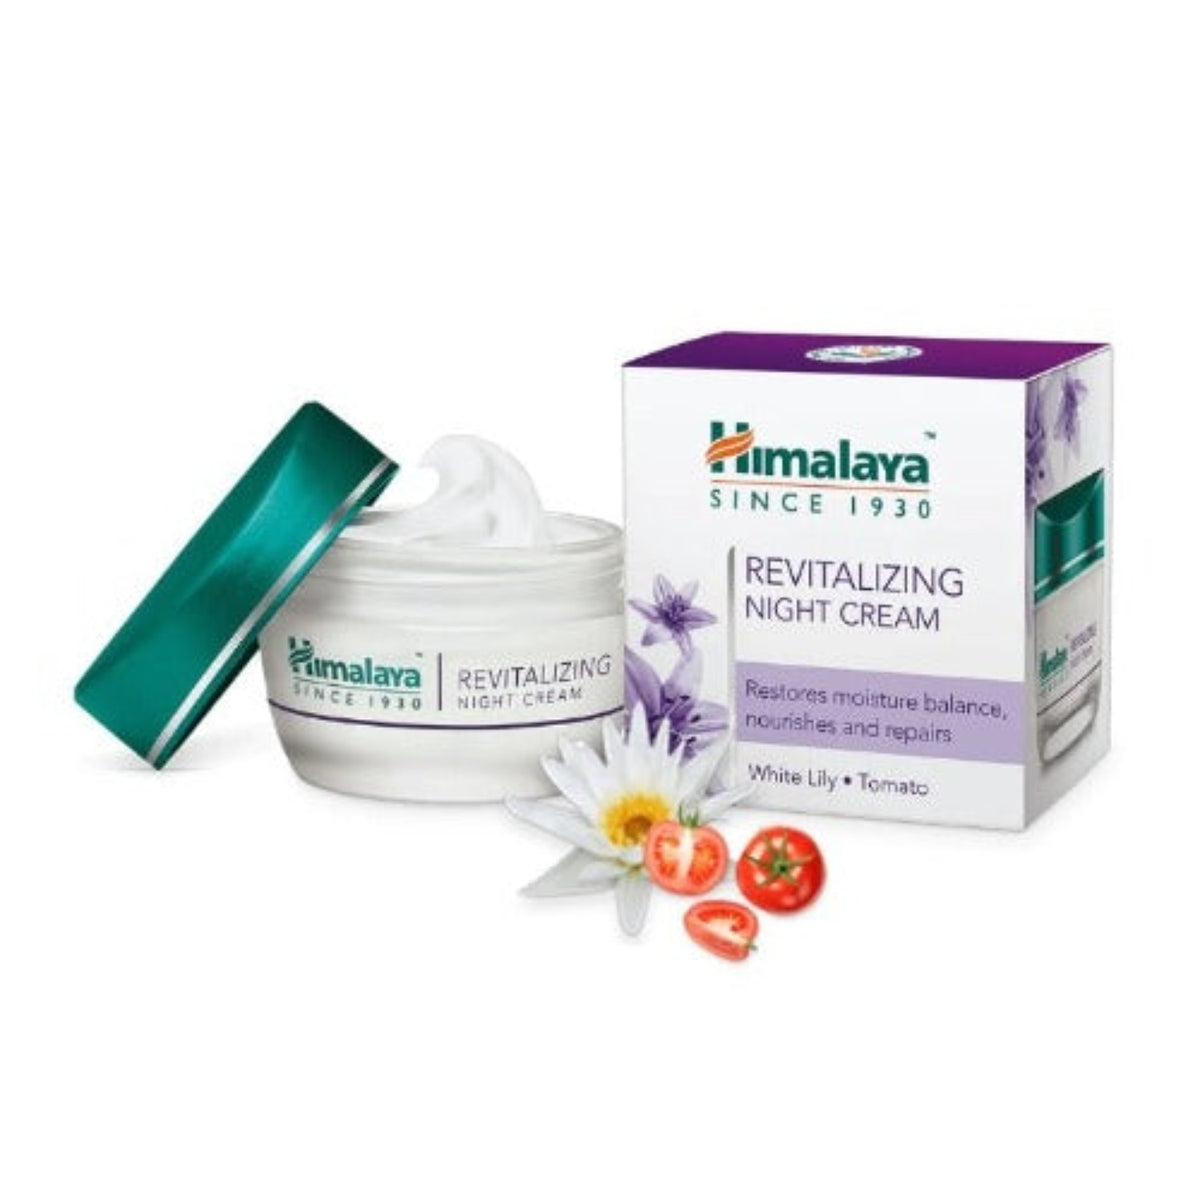 Himalaya Herbal Ayurvedic Personal Care Revitalizing Restores Moisture Balance,And Nourishes And Repairs Night Cream 50 g